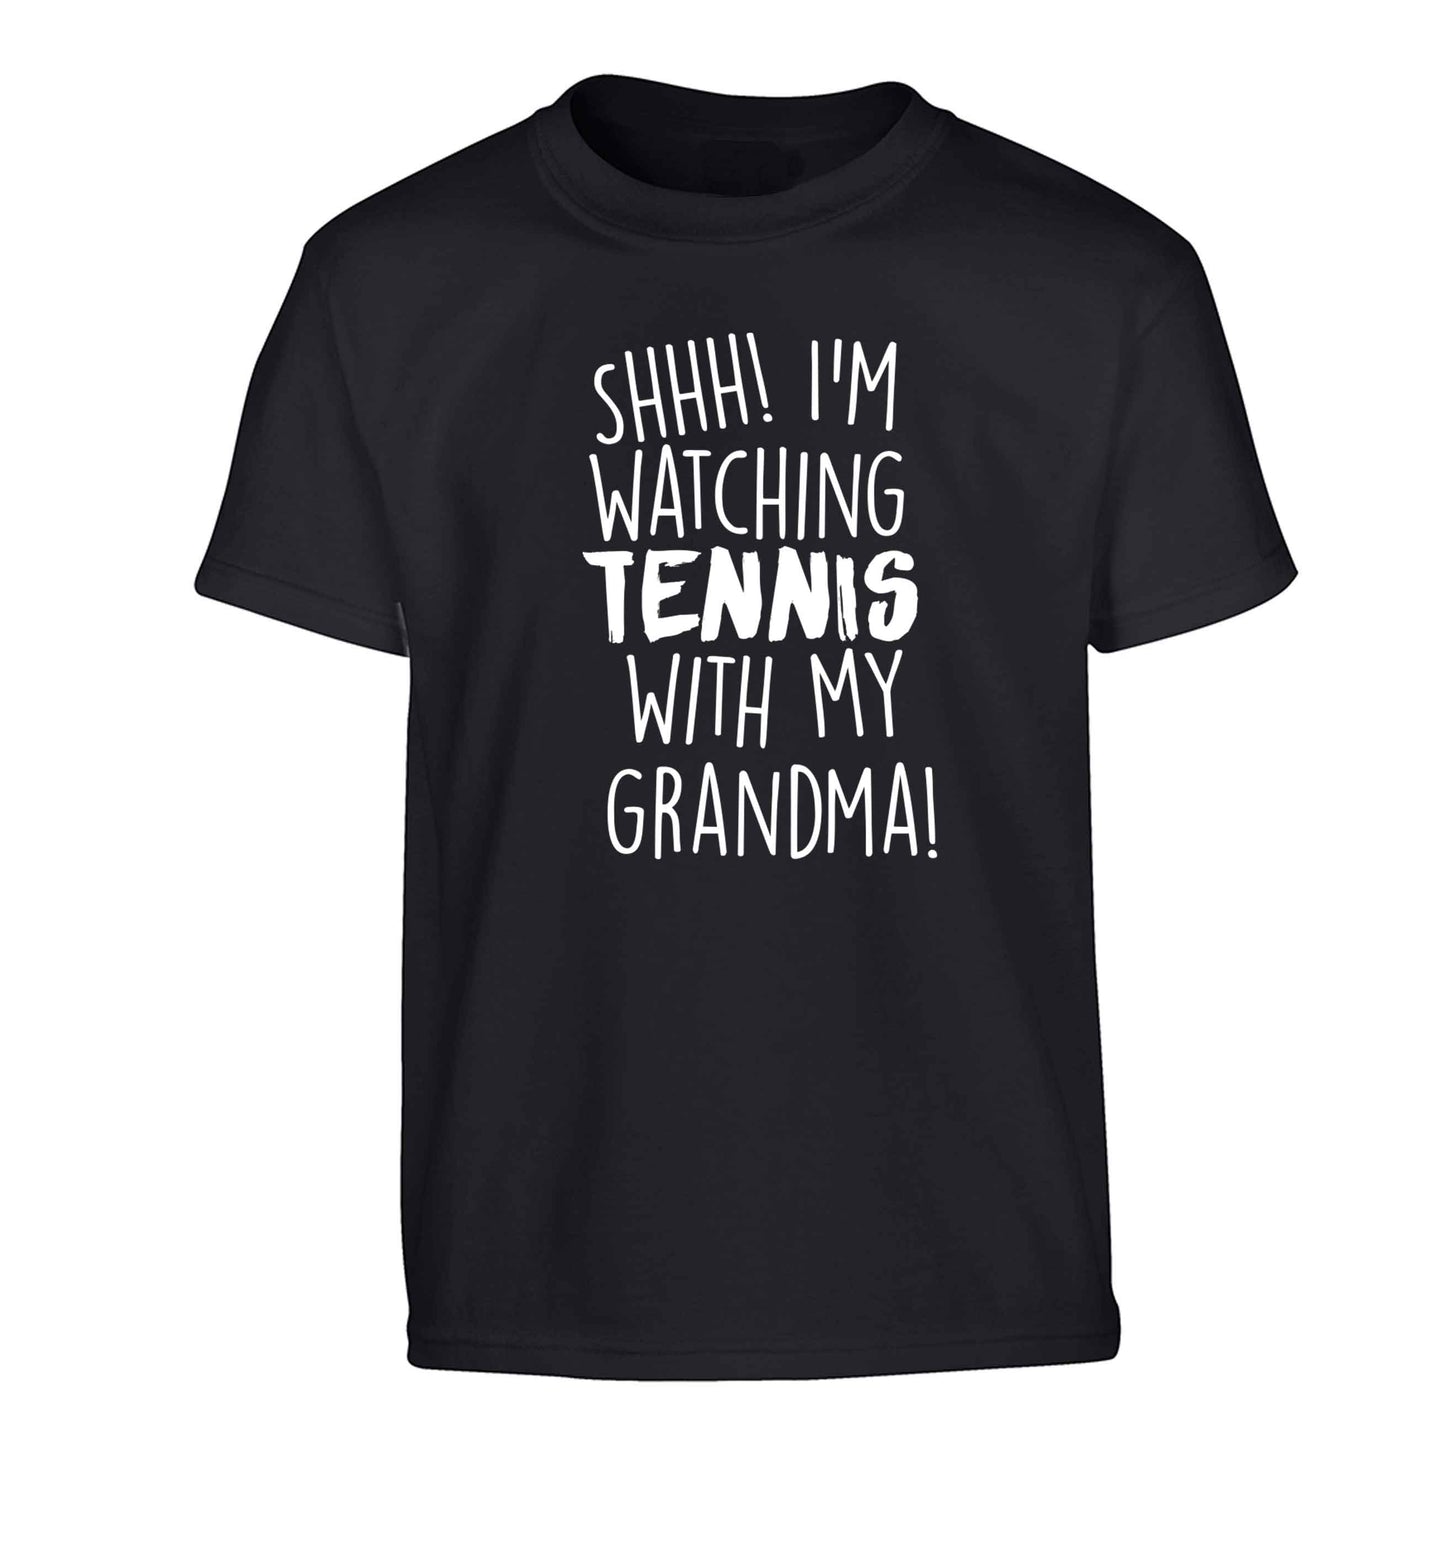 Shh! I'm watching tennis with my grandma! Children's black Tshirt 12-13 Years